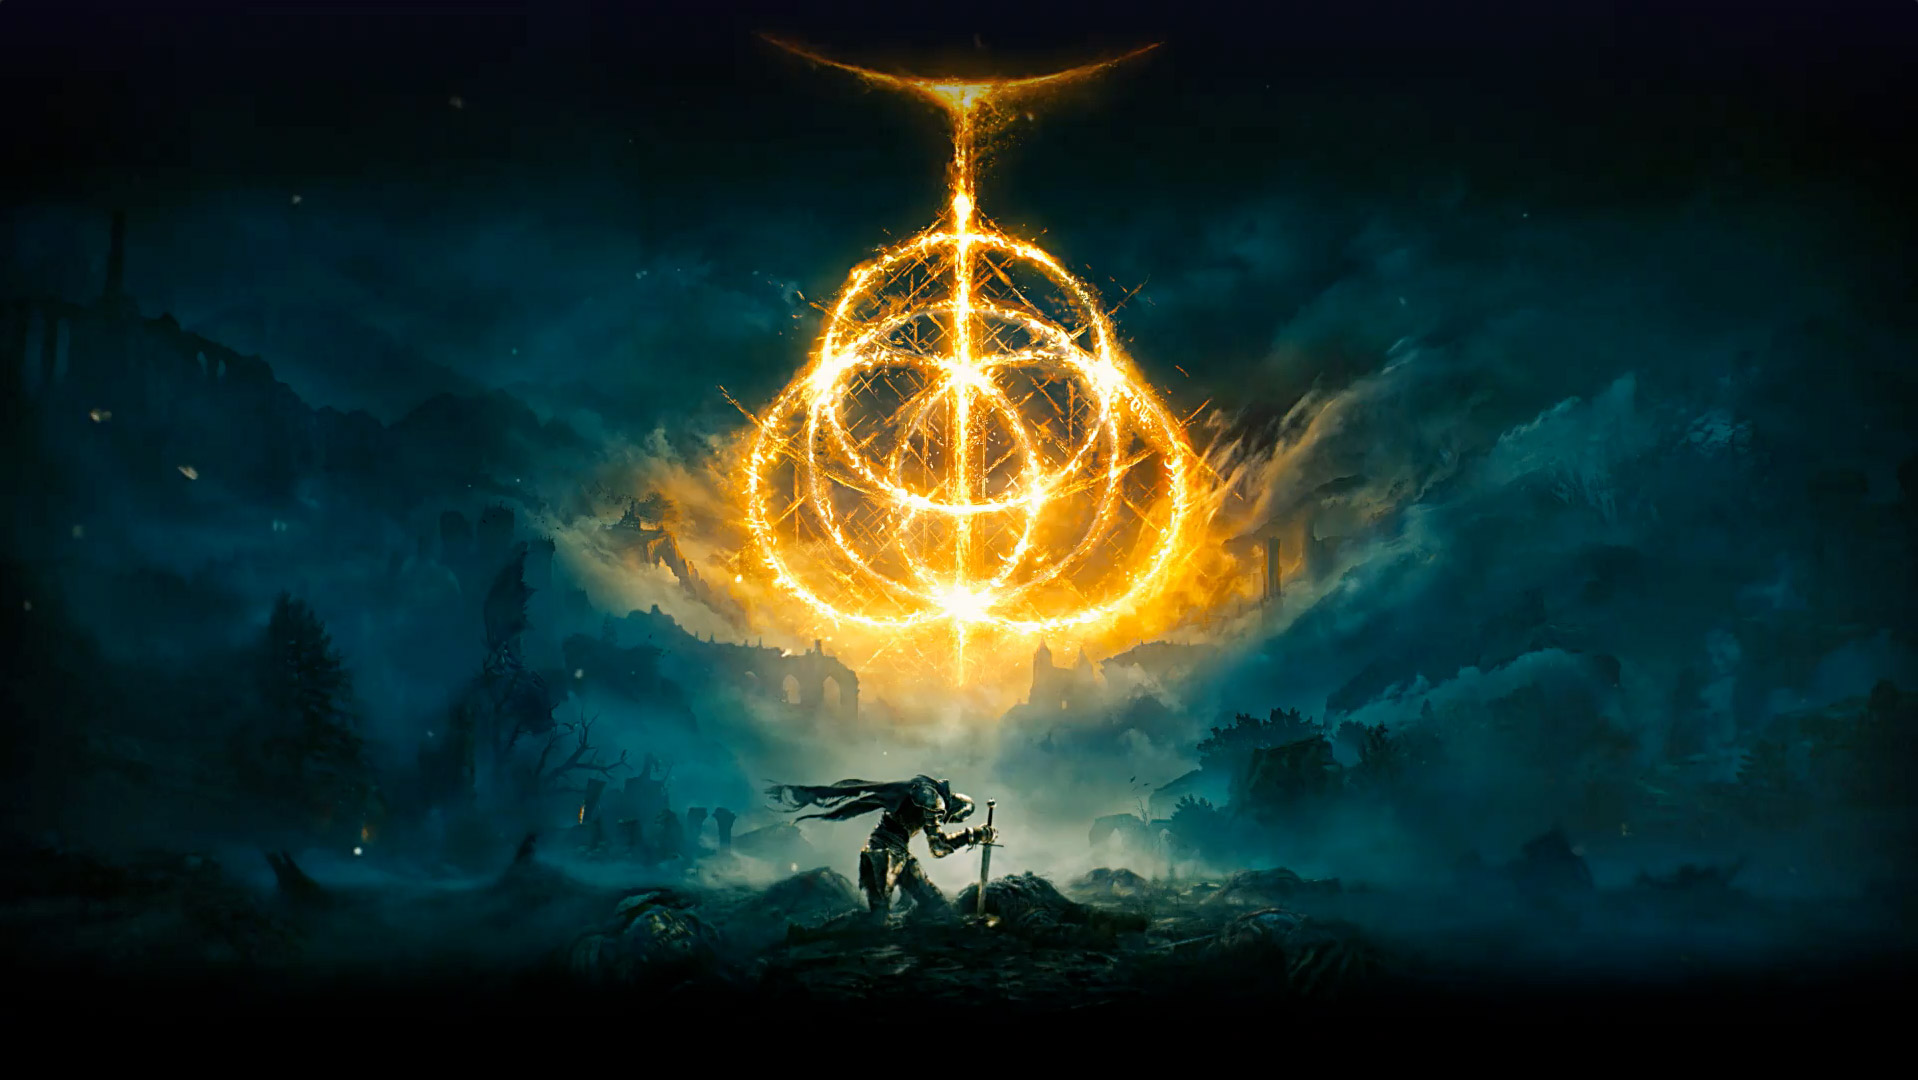 Elden Ring. Múltiples anillos de fuego que crean el símbolo de Elden Ring. Personaje de caballero con su espada en el suelo en una zona desolada con niebla.